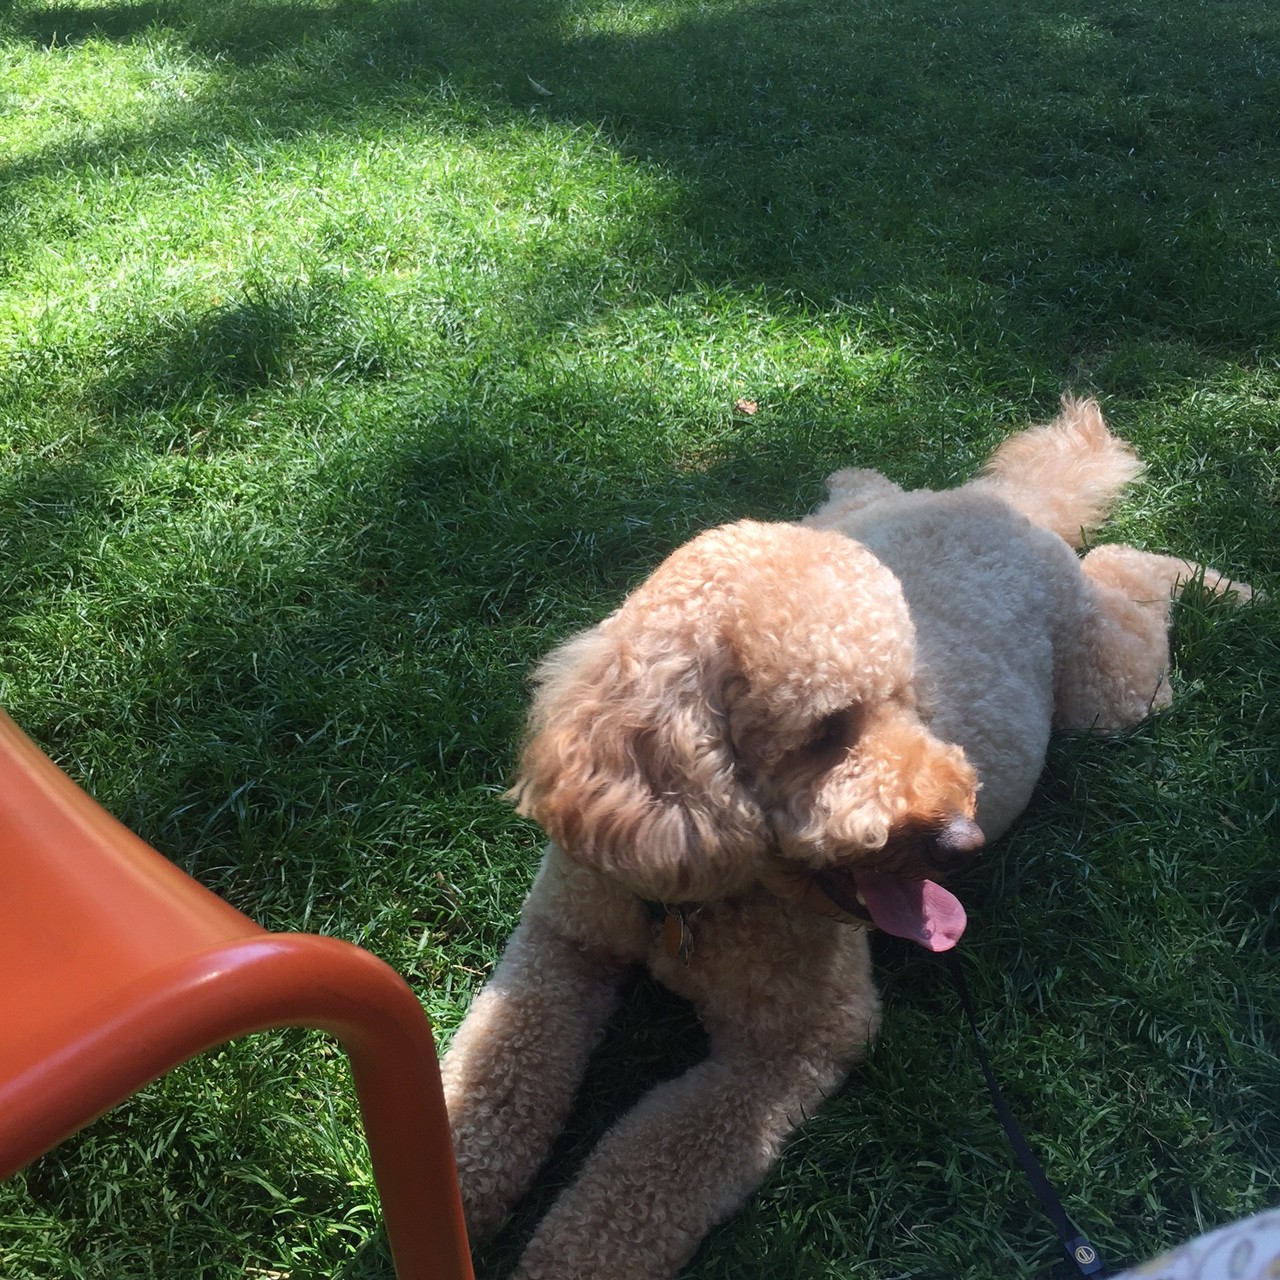 Daisy relaxing in Harvard Yard